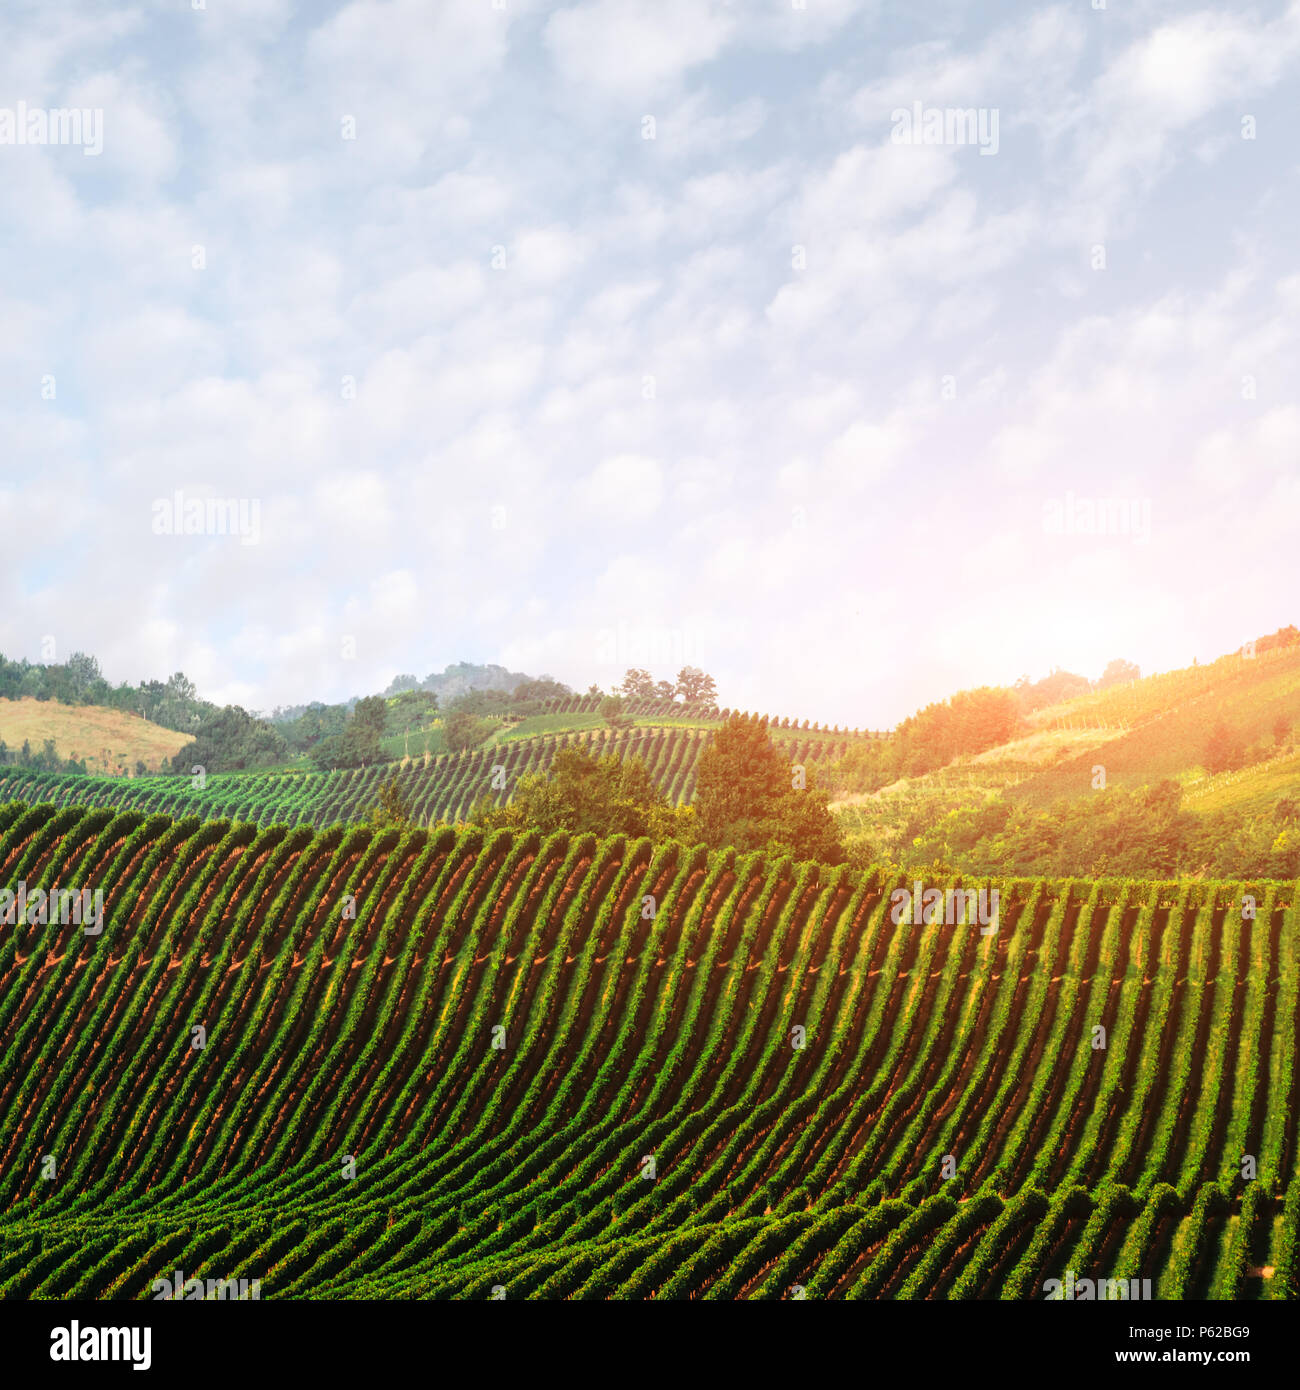 Increíble paisaje rural con viña verde Foto de stock